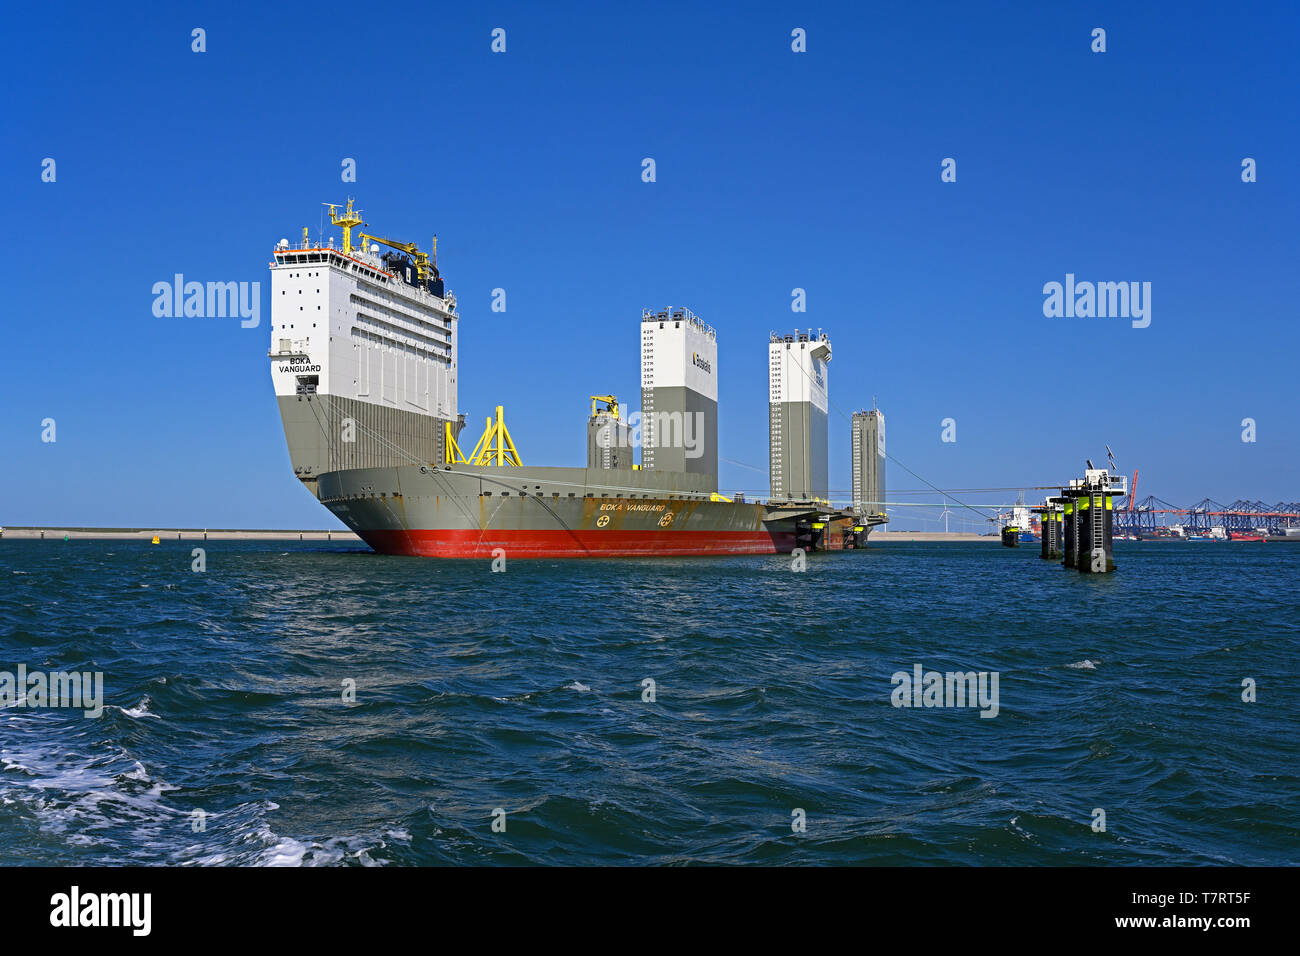 Der Hafen von Rotterdam, Niederlande - 2019-03-31: Weltweit größte semi-submersible Heavy lift Schiffes boka Vanguard (imo Nr. 9618783) (116175 dwt) am Anker tun Stockfoto